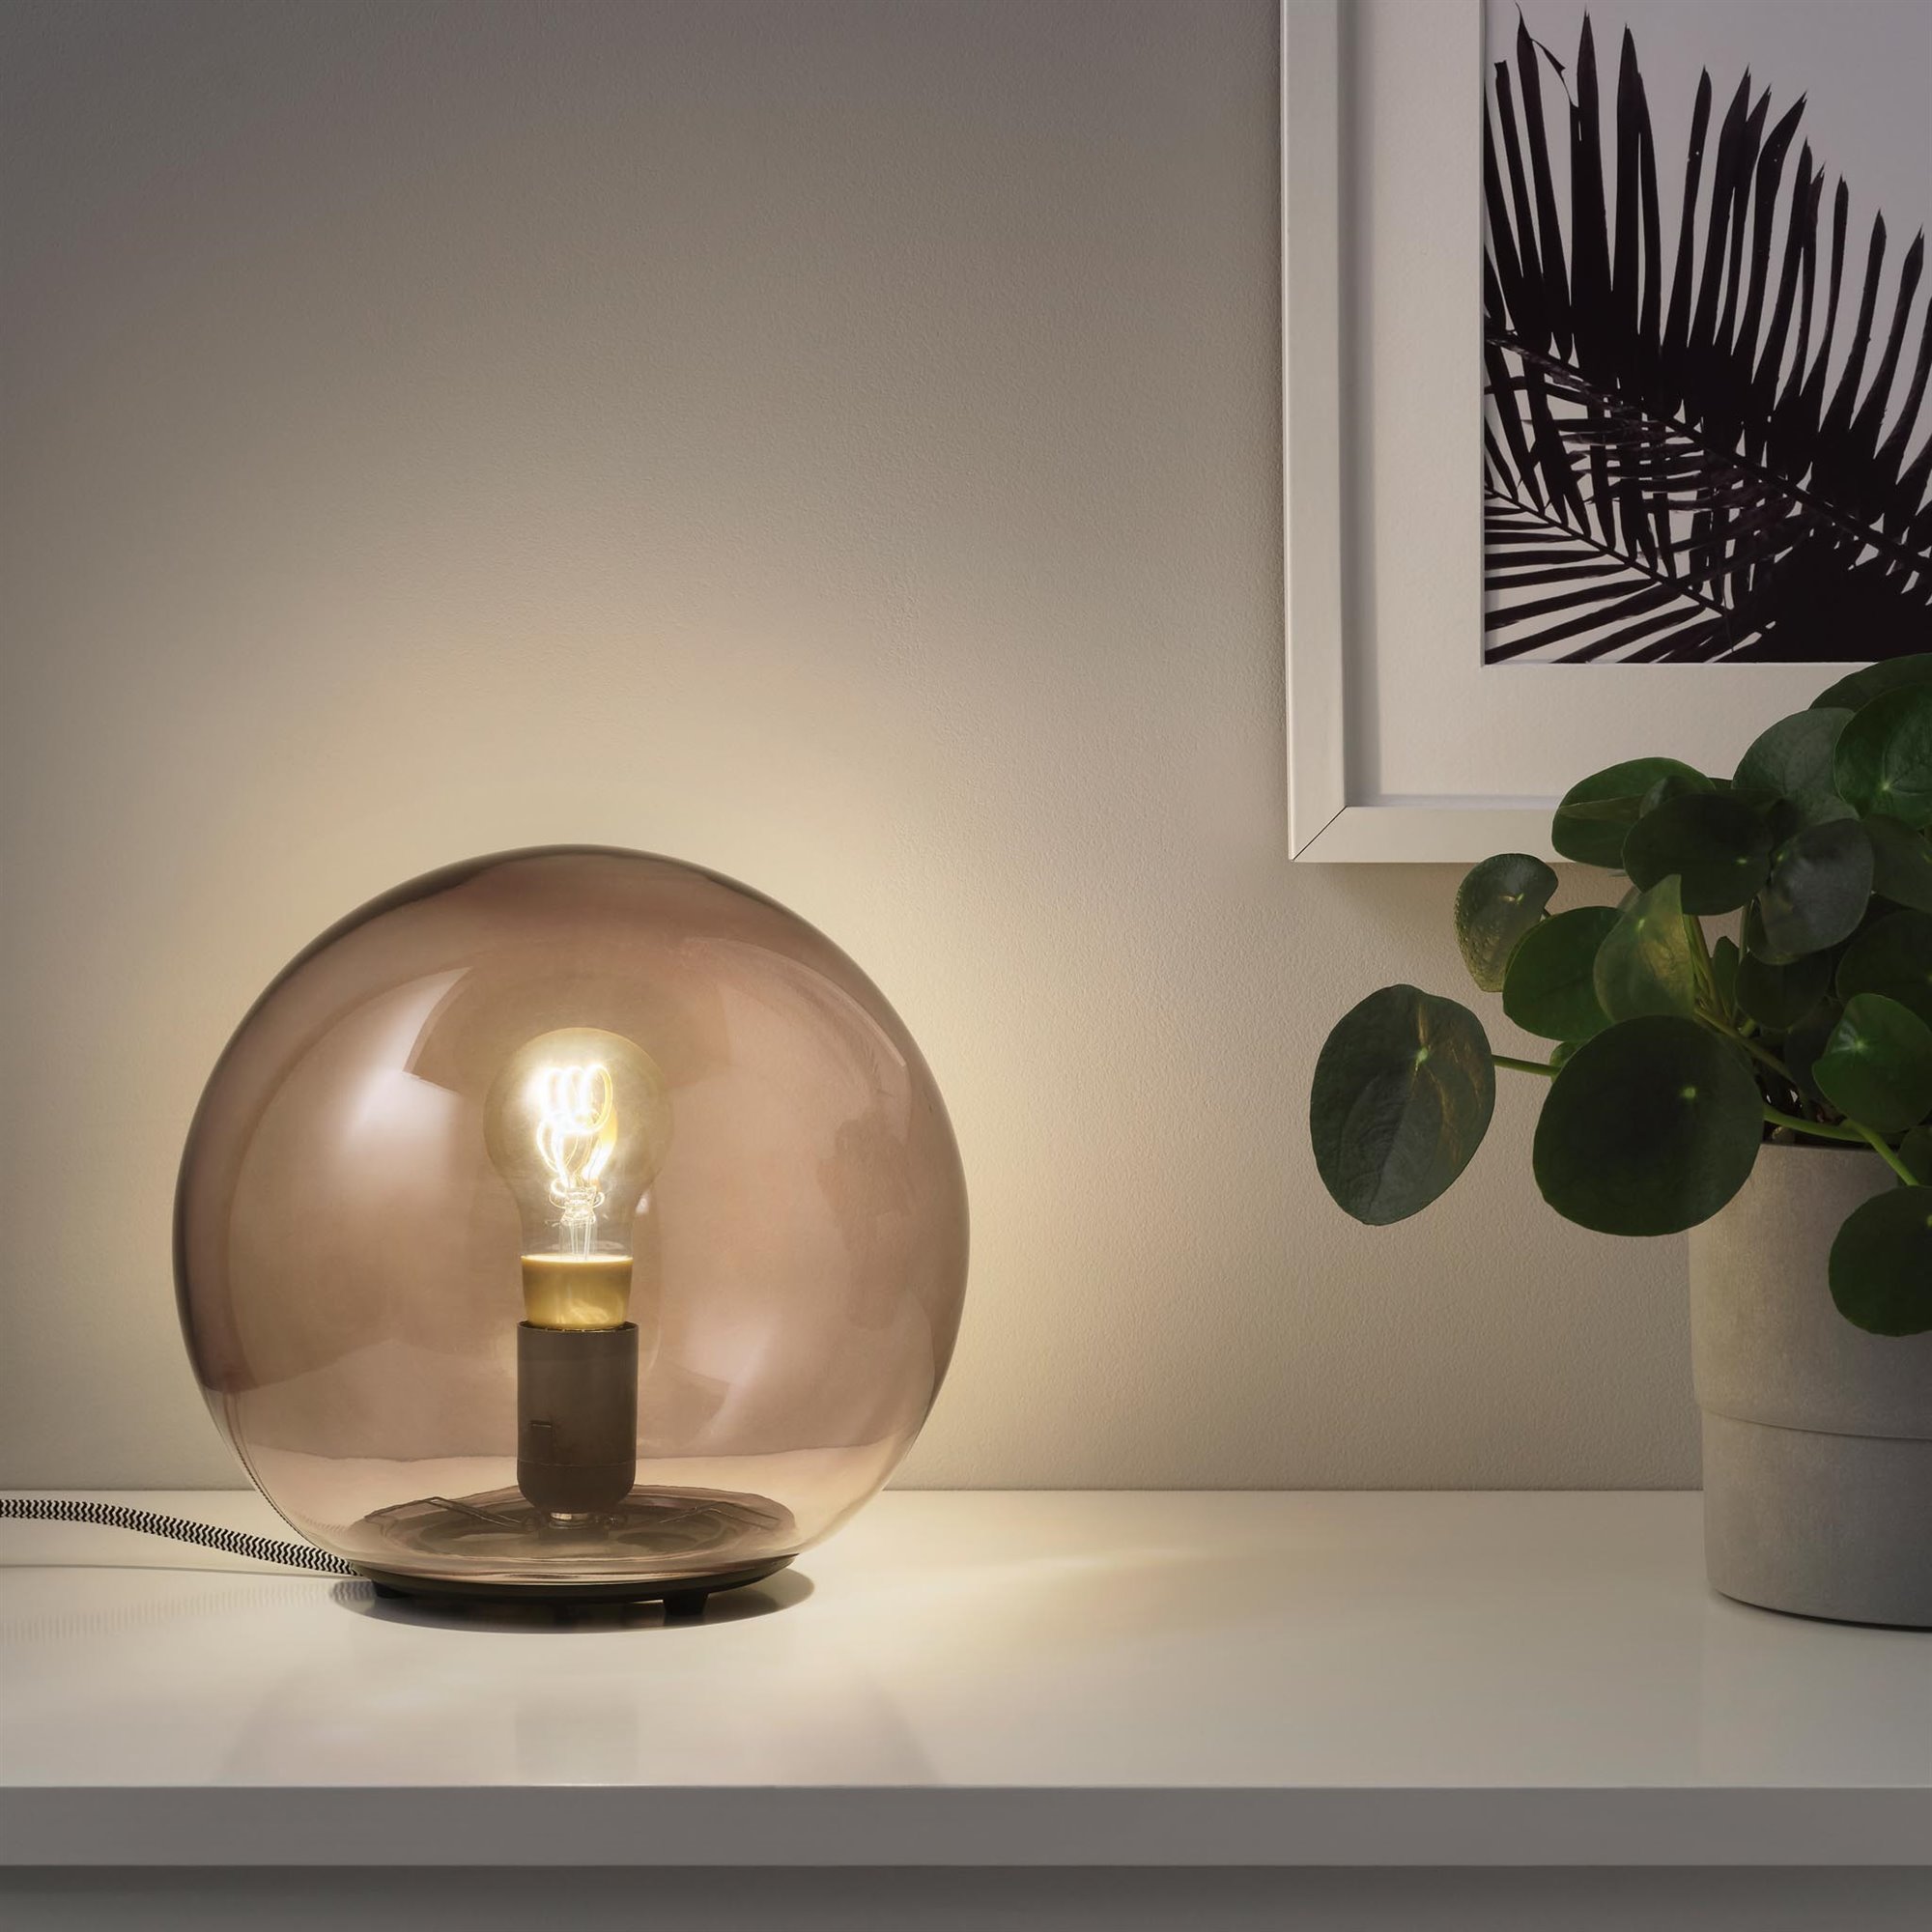 IKEA Hogar sostenible iluminacion. Iluminar de forma eficiente 